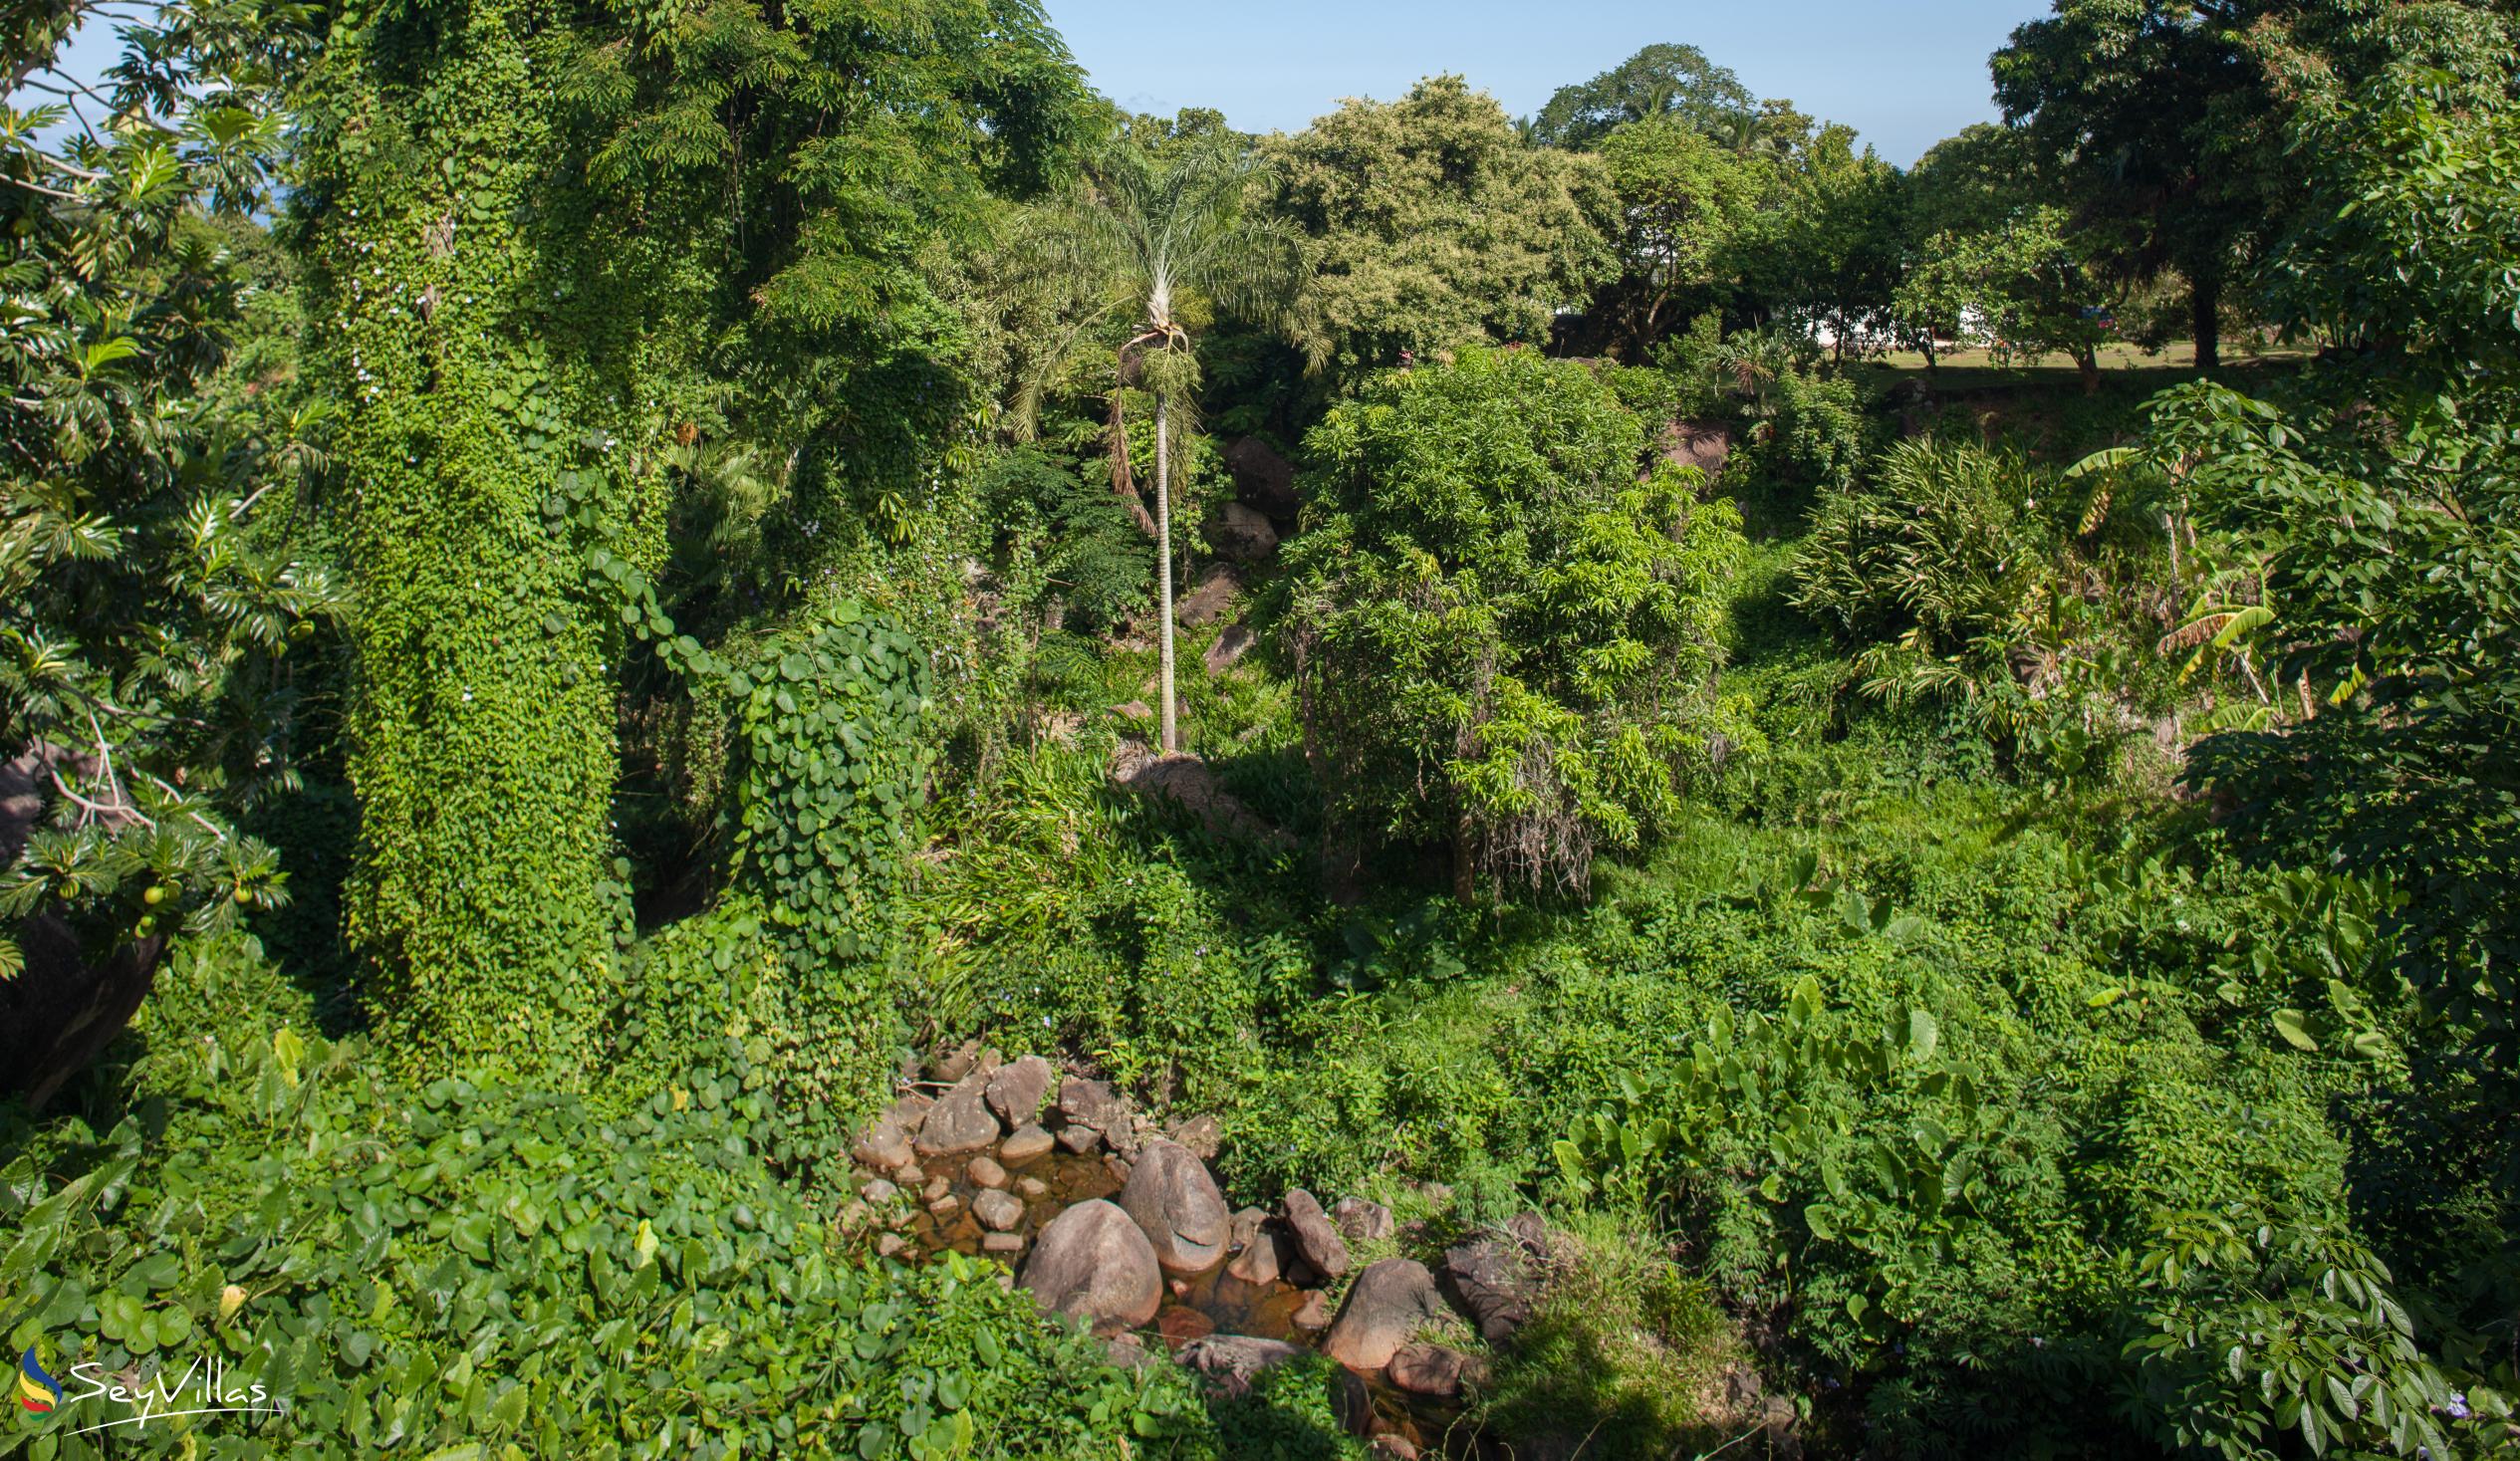 Foto 39: Bambous River Lodge - Location - Mahé (Seychelles)